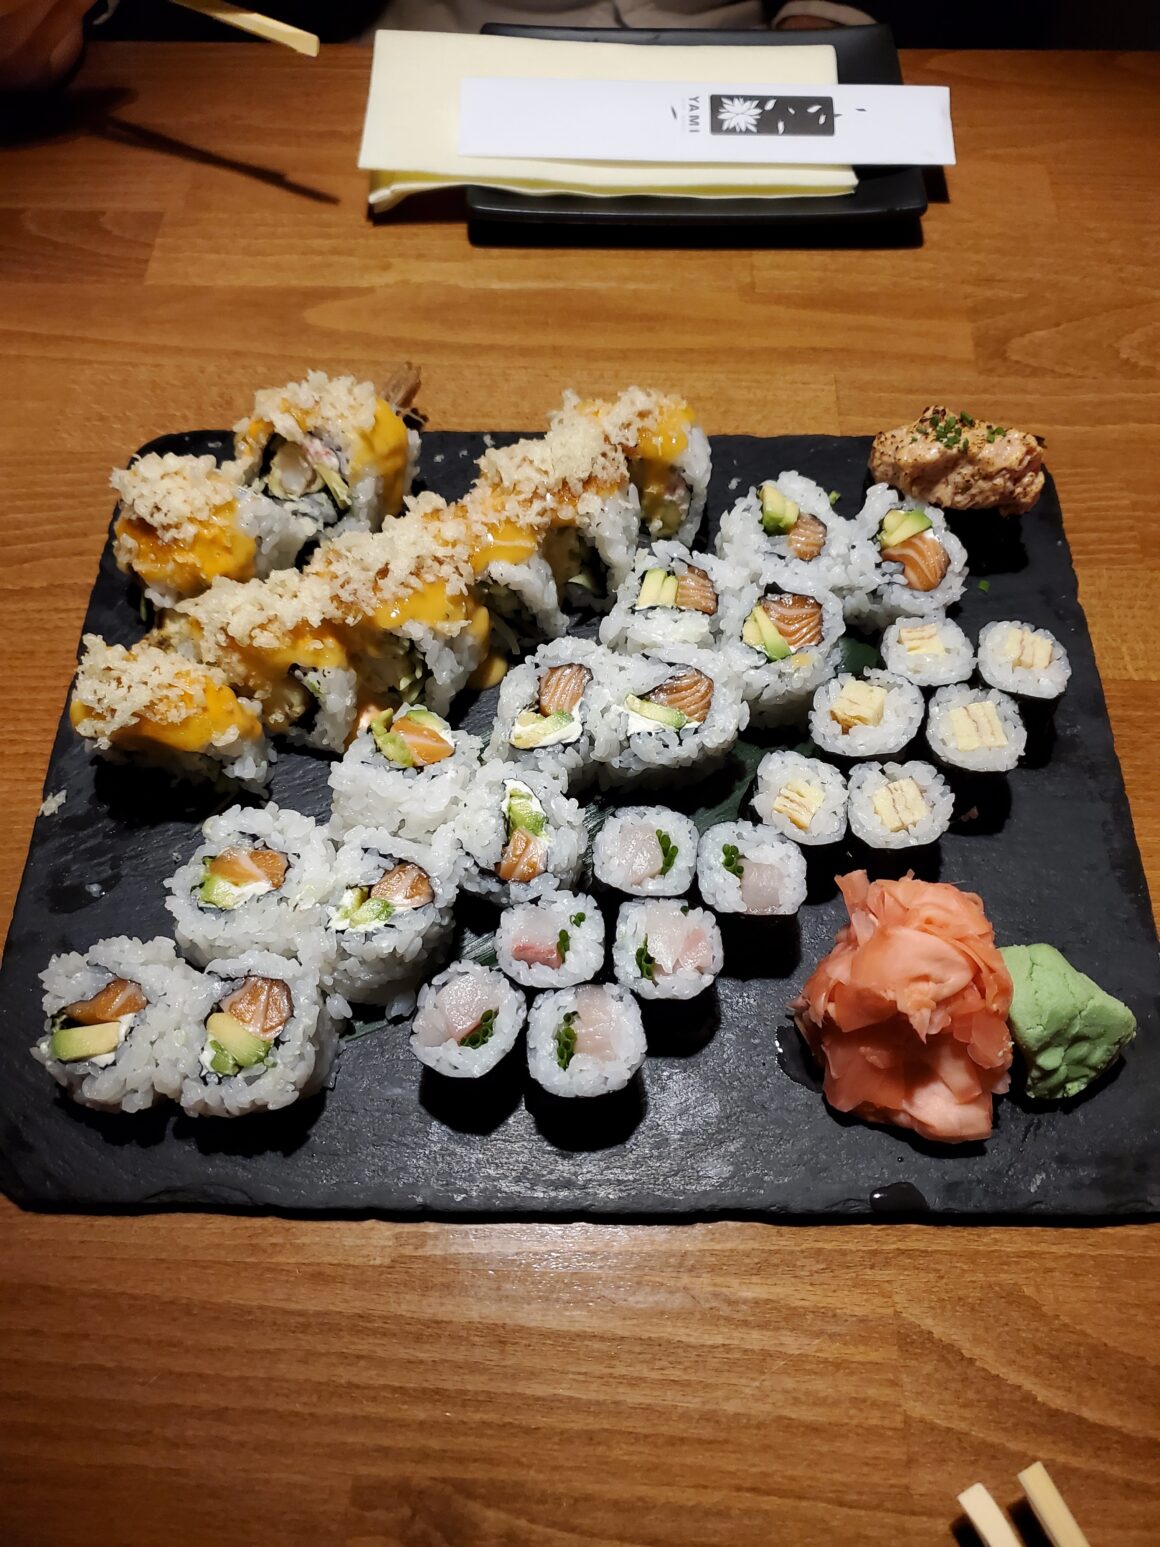 The sushi at Yami Sushi in Prague